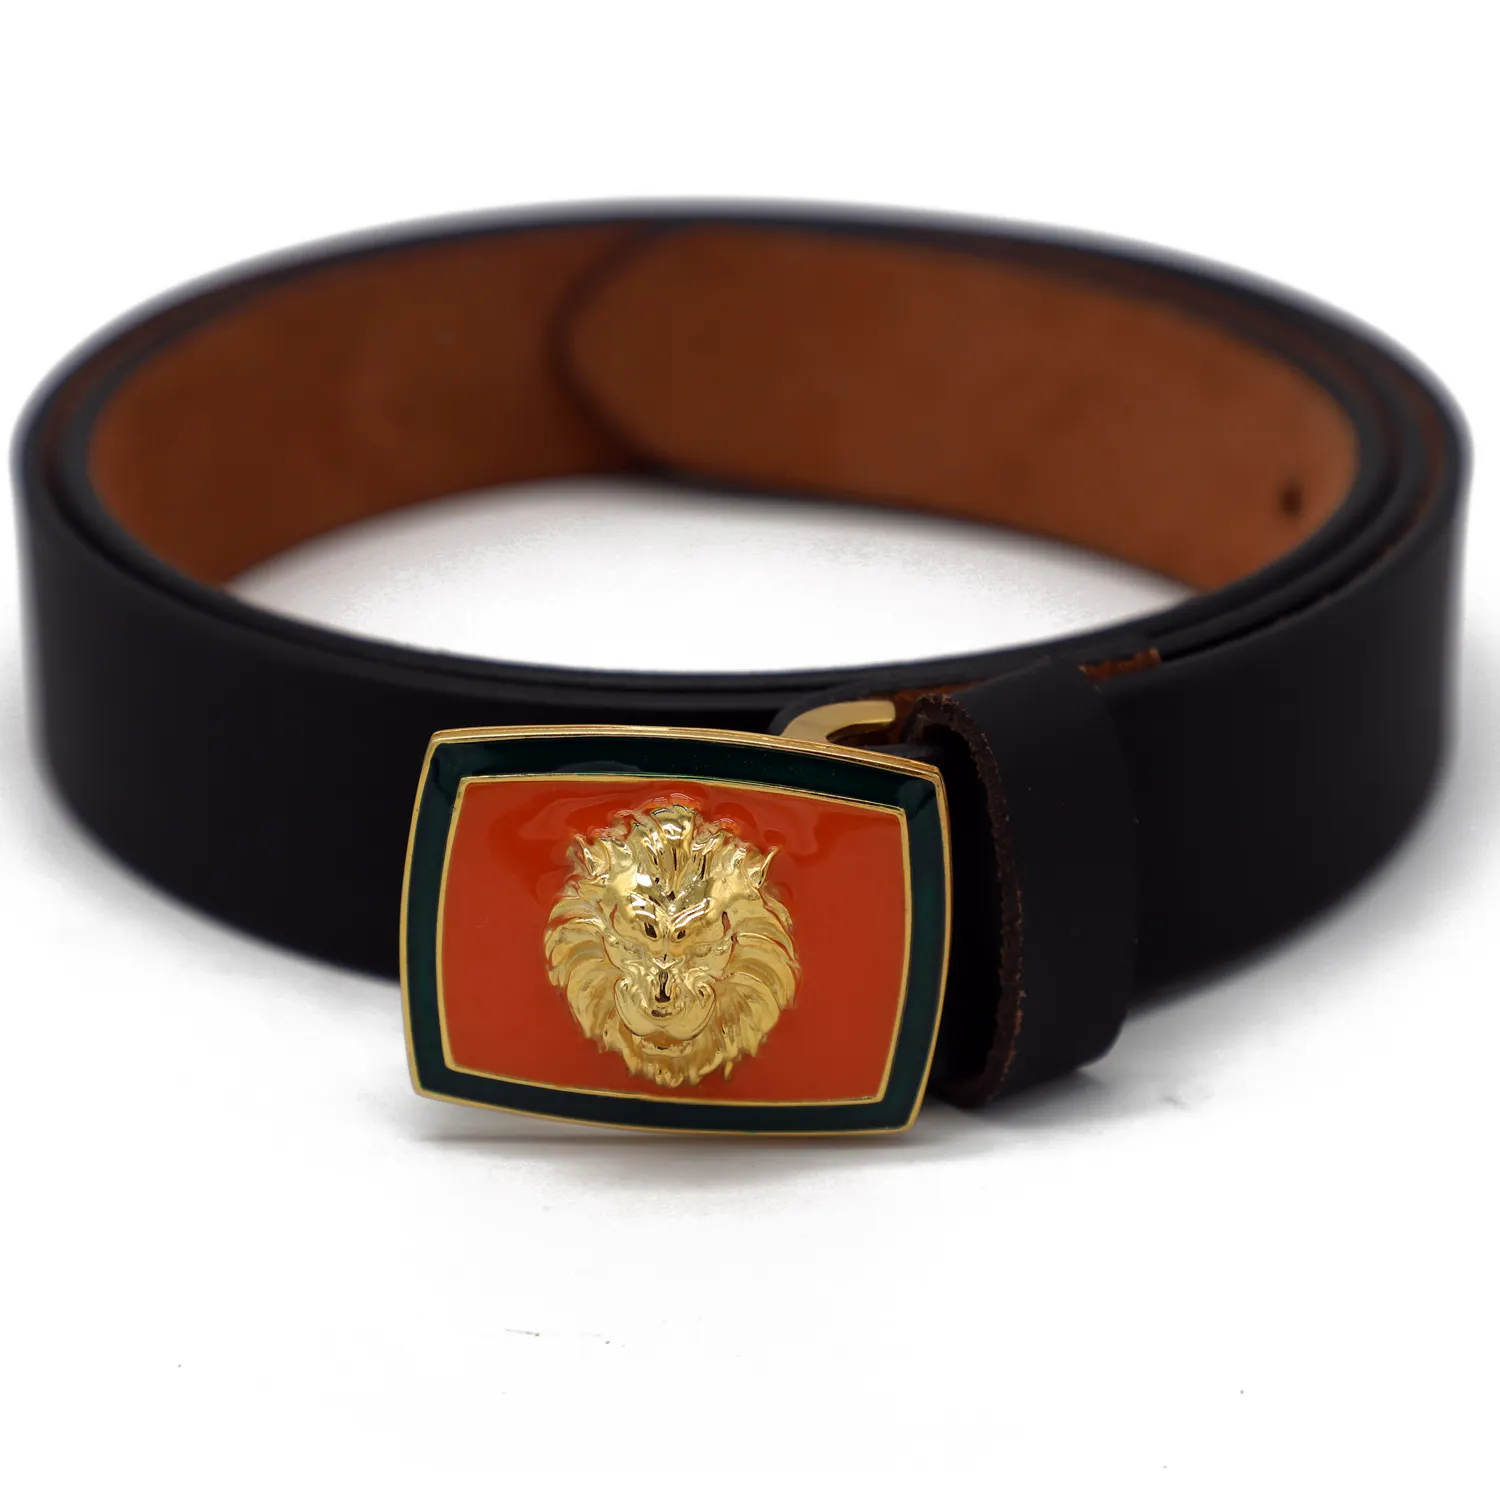 925 Sterling Silver Orange Enamel Belt Buckle Square Shape Lion Face Belt Gold Plated Beautiful Men's Fashion Gift For Him